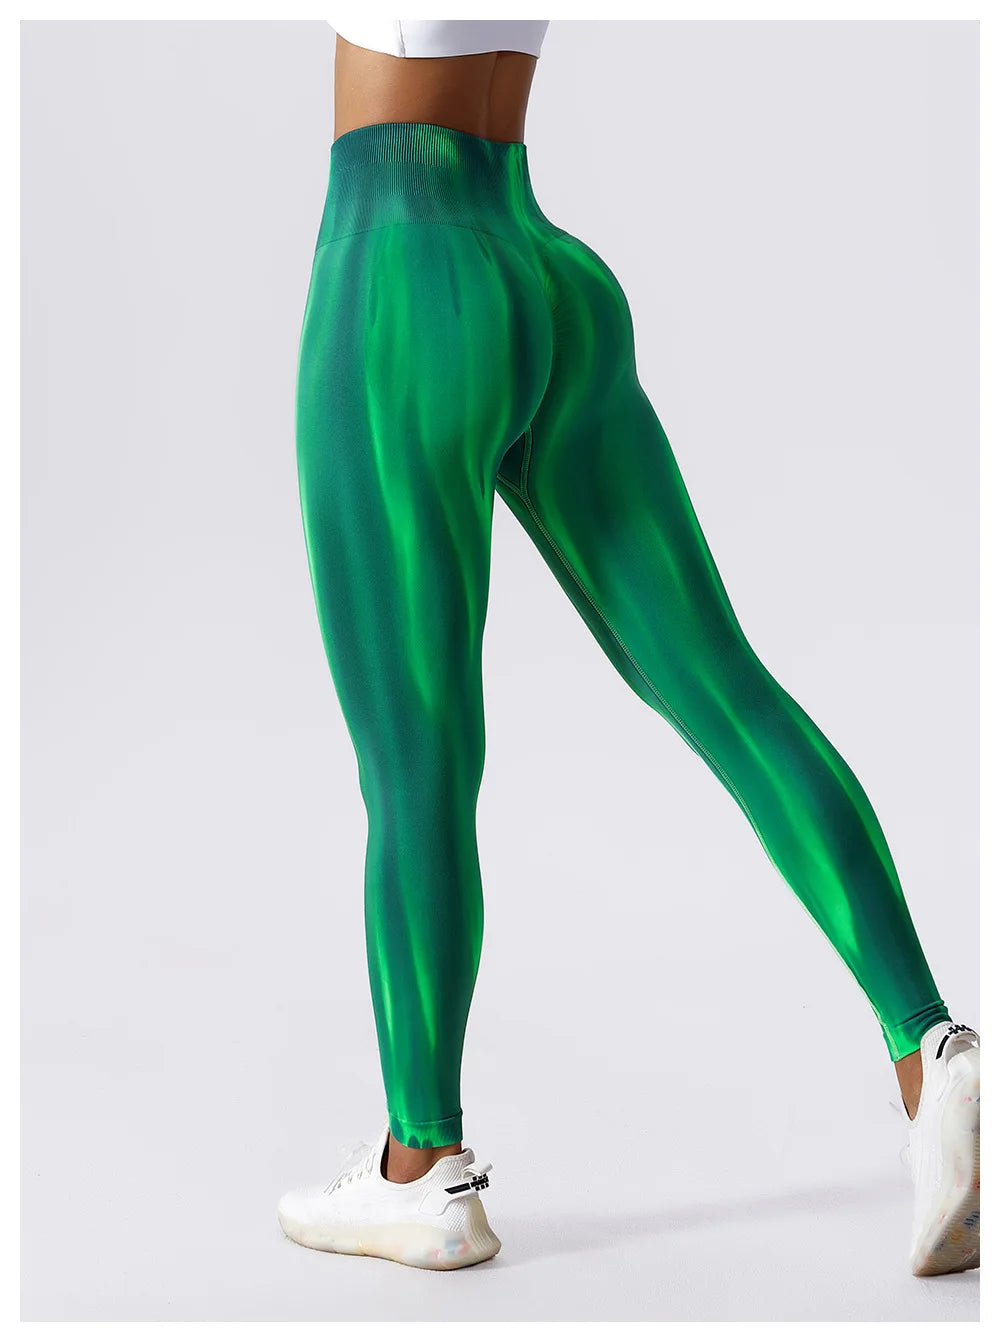 Adriana Tie-Dye leggings